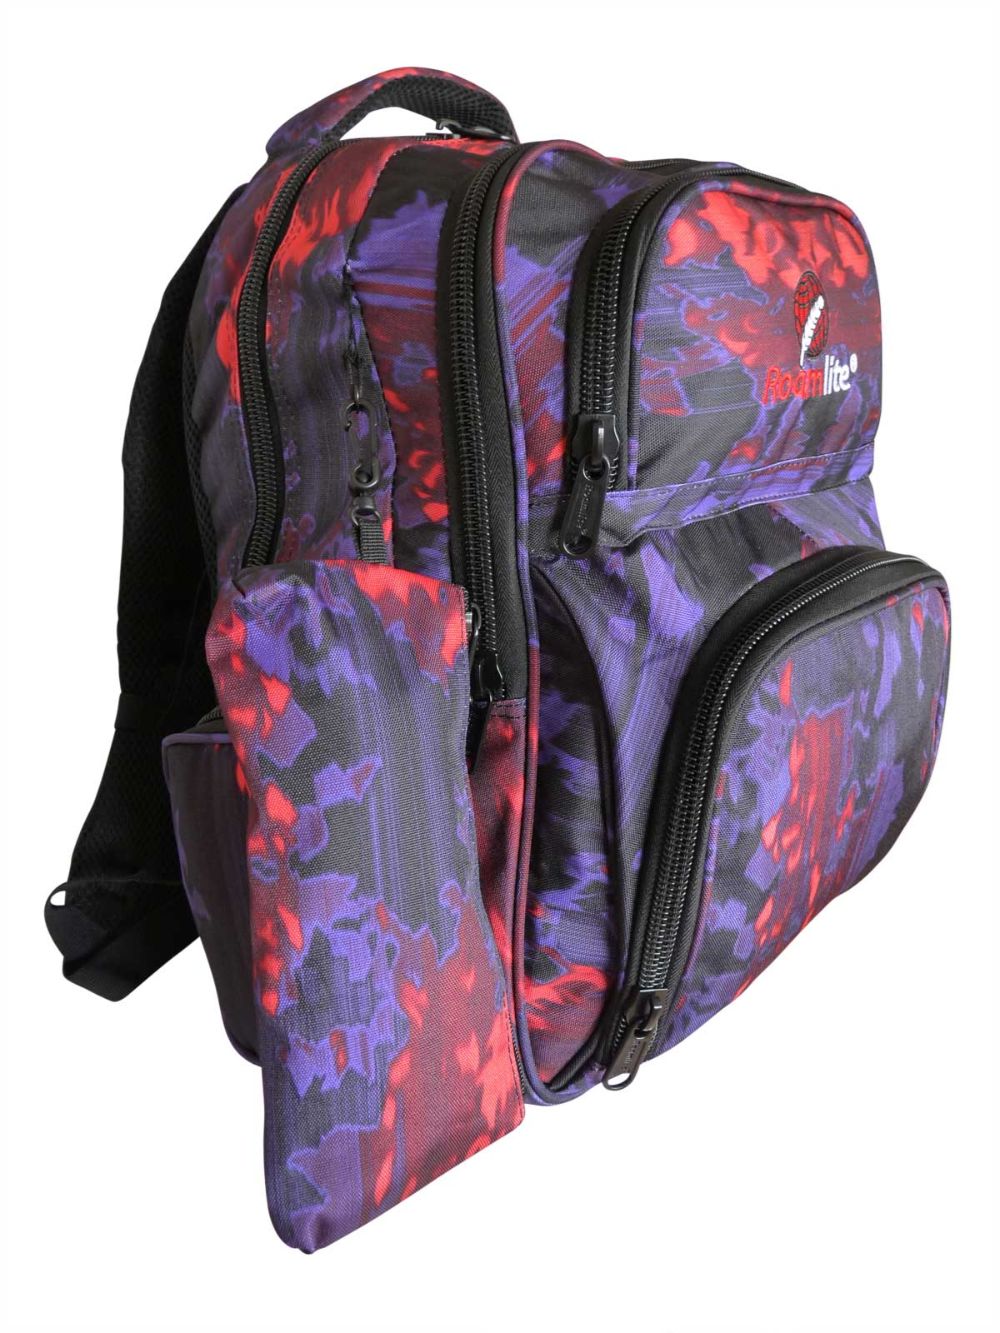 Roamlite Childrens Backpack Purple Orange Funky Water pattern RL838